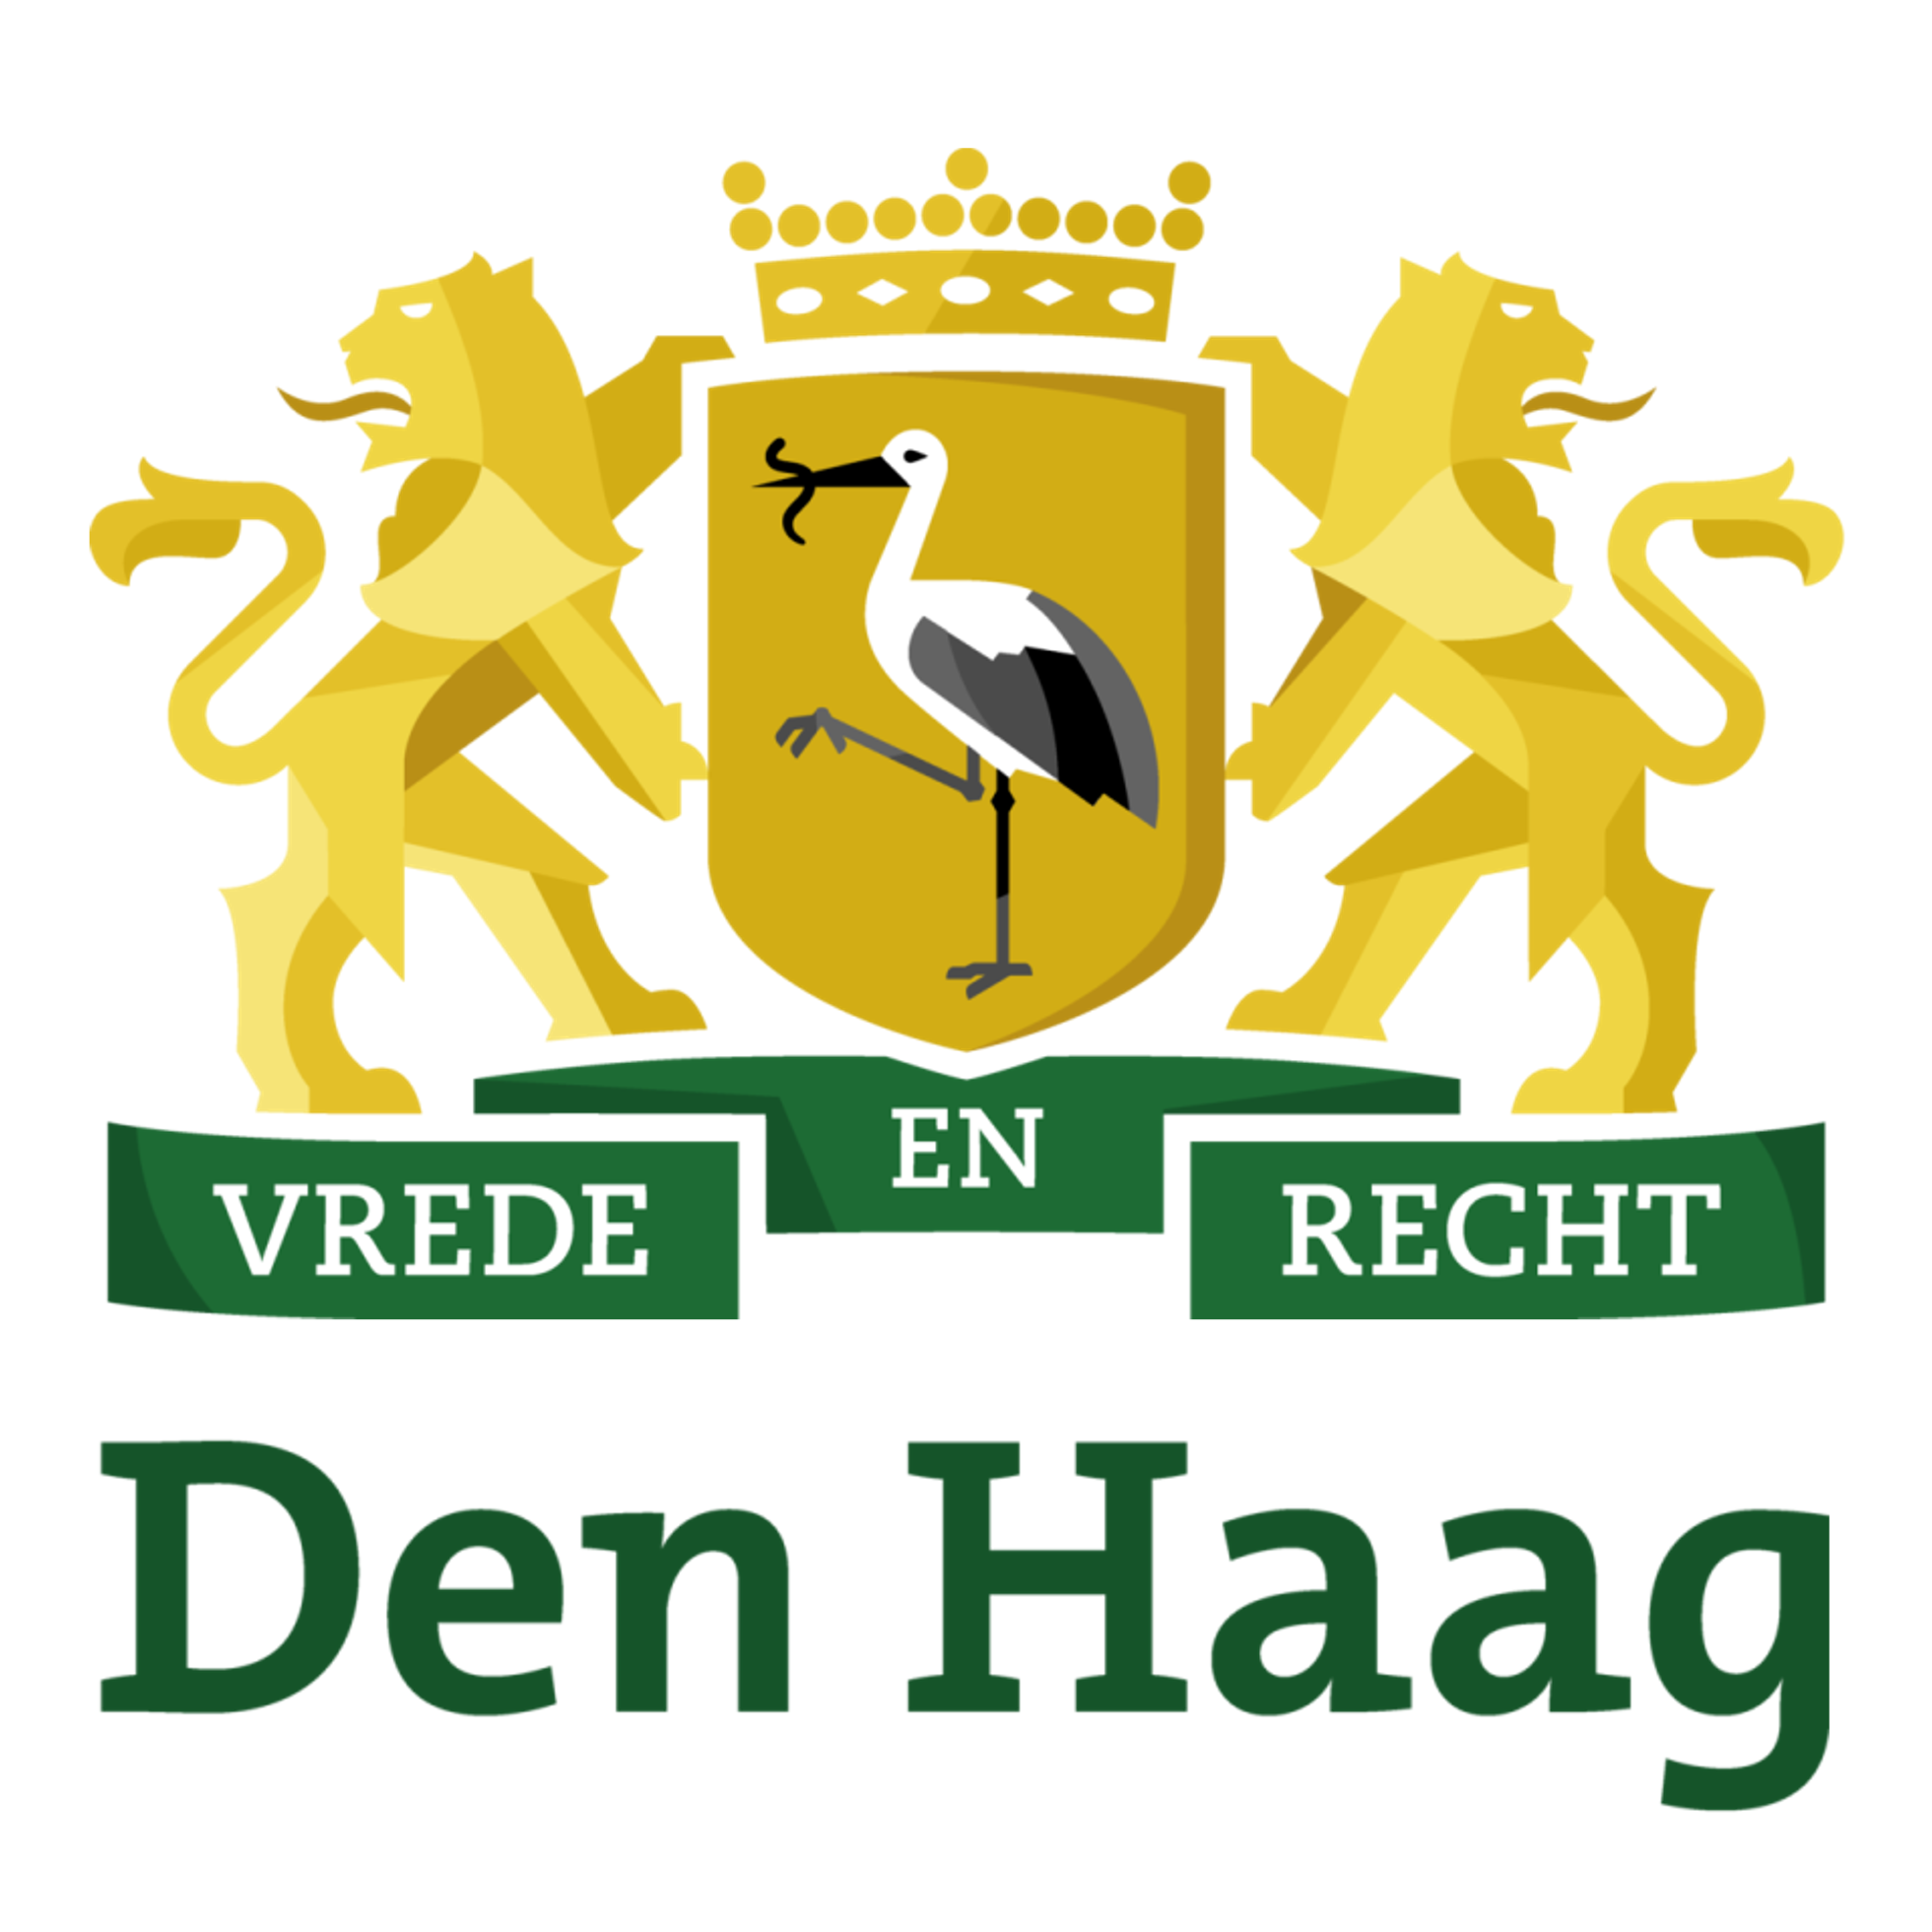 Twee gouden leeuwen die een schild vasthouden met daarop een reiger, daaronder een groene banner met de tekst 'Vrede en Recht', met helemaal onderaan de tekst 'Den Haag' in diepgroen